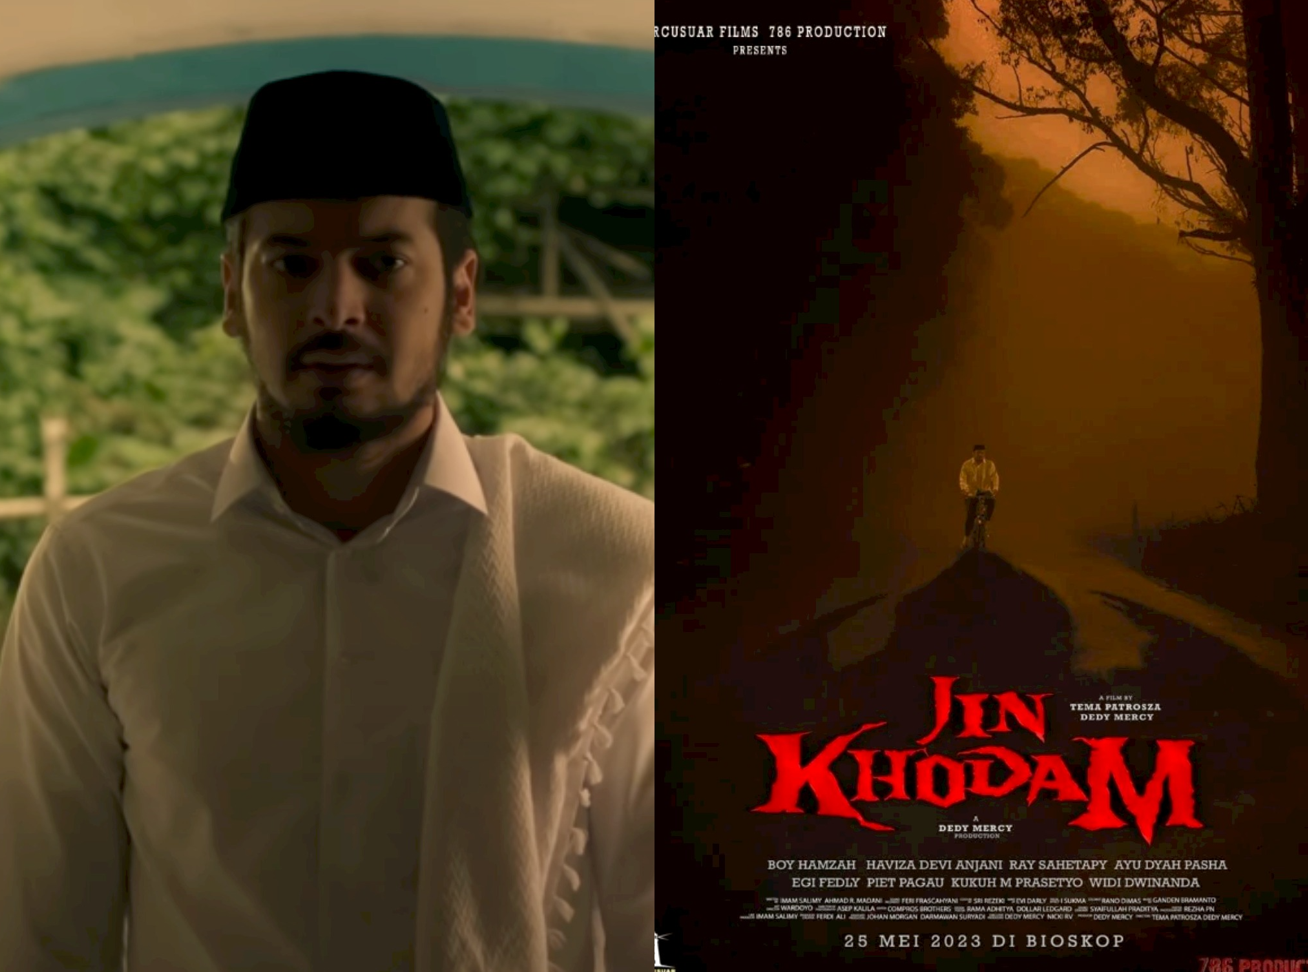 Bocoran Sinopsis Dan Jadwal Tayang Jin Khodam Film Horor Terbaru Indonesia Pasundan Ekspres 